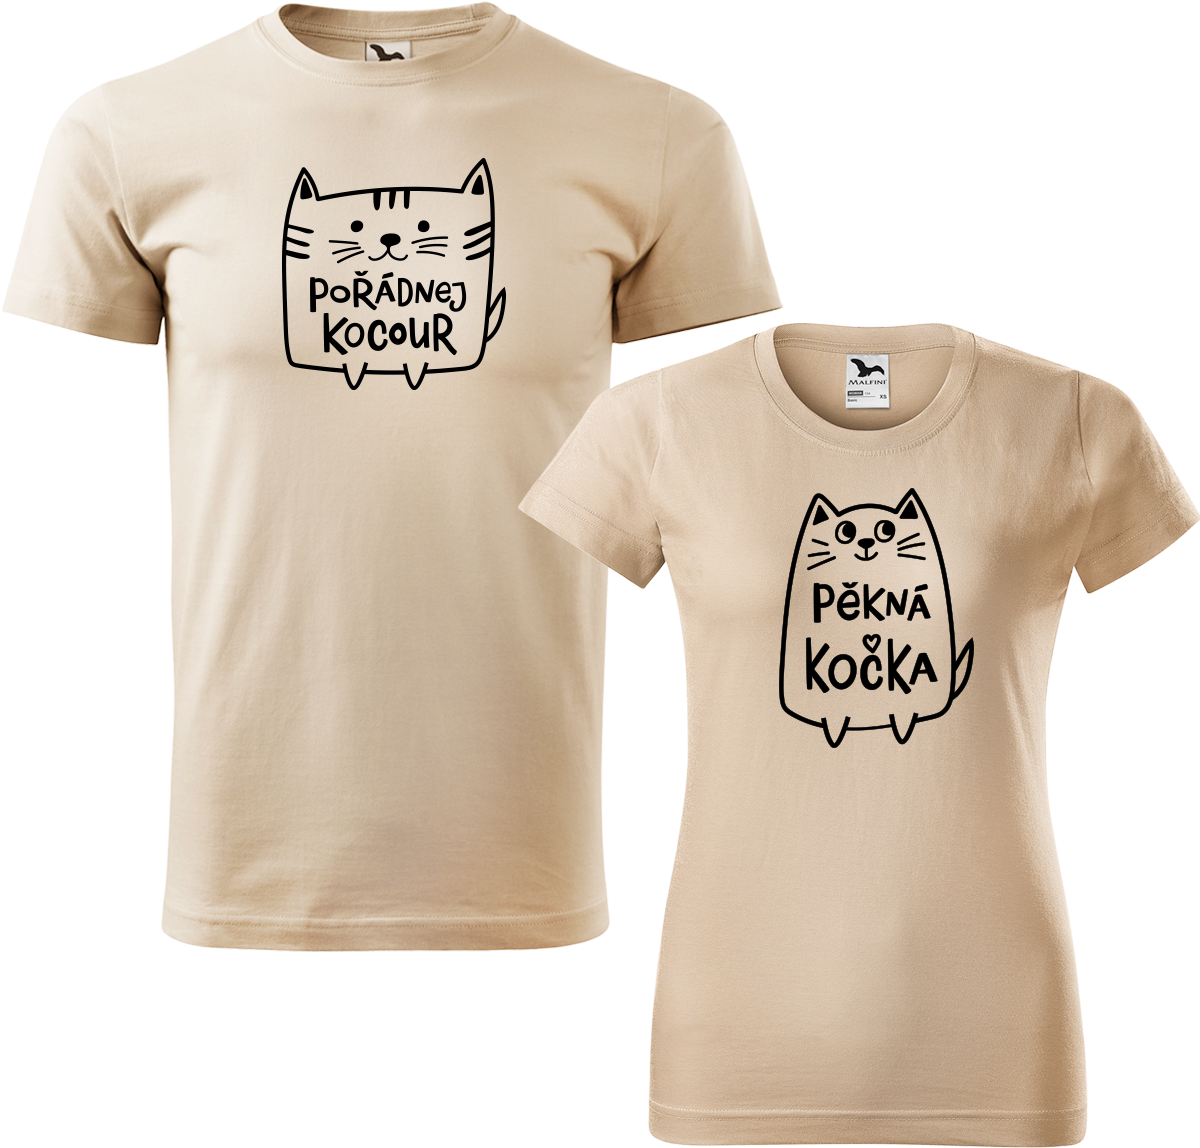 Trička pro páry - Pořádnej kocour a pěkná kočka Barva: Písková (08), Velikost dámské tričko: S, Velikost pánské tričko: M